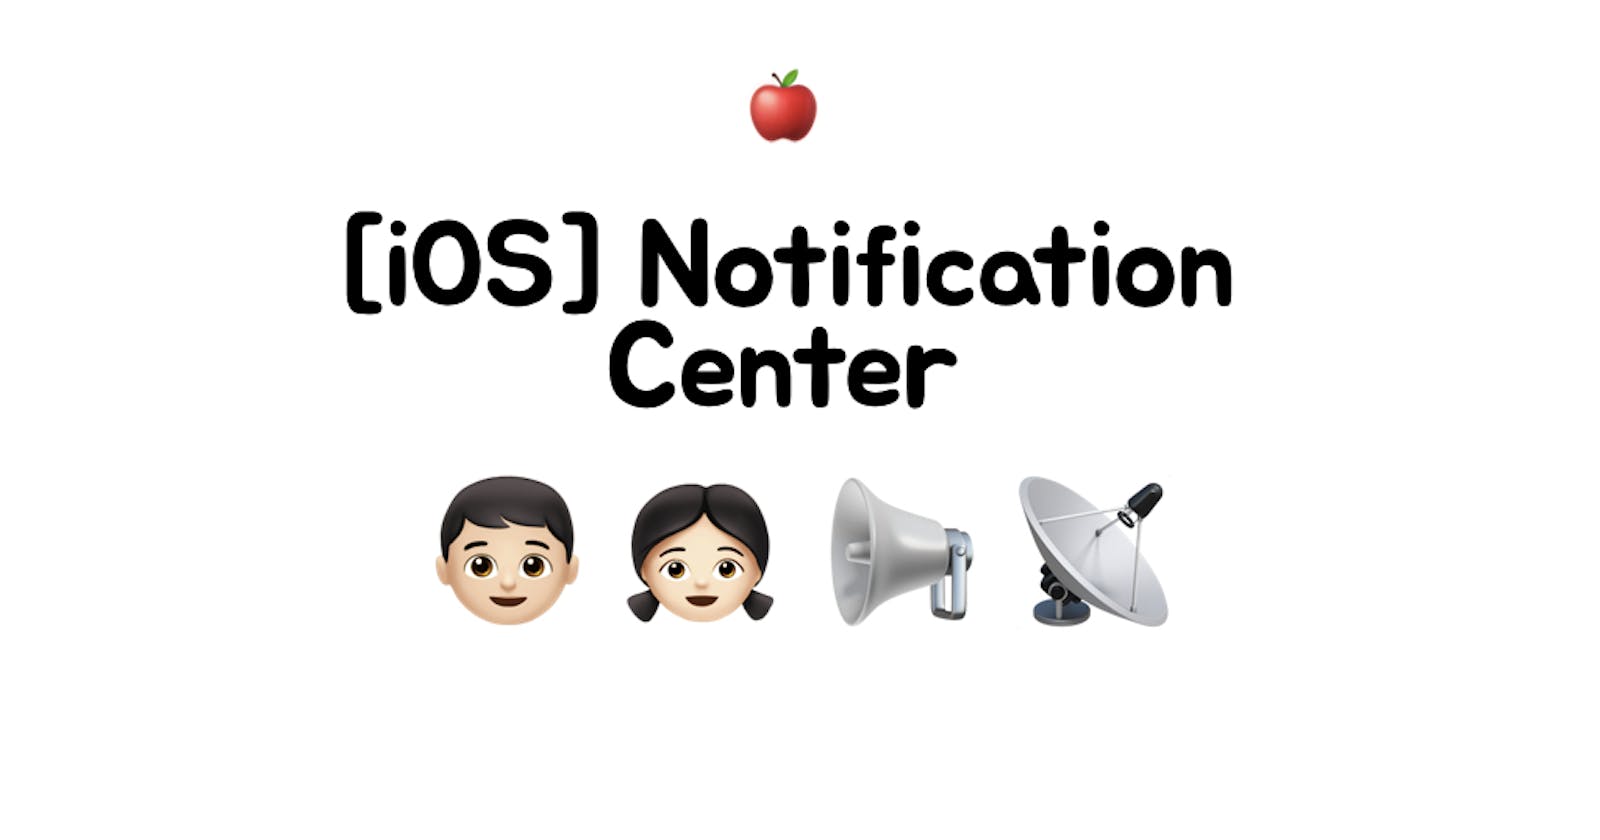 [iOS] Notification Center 구현하기